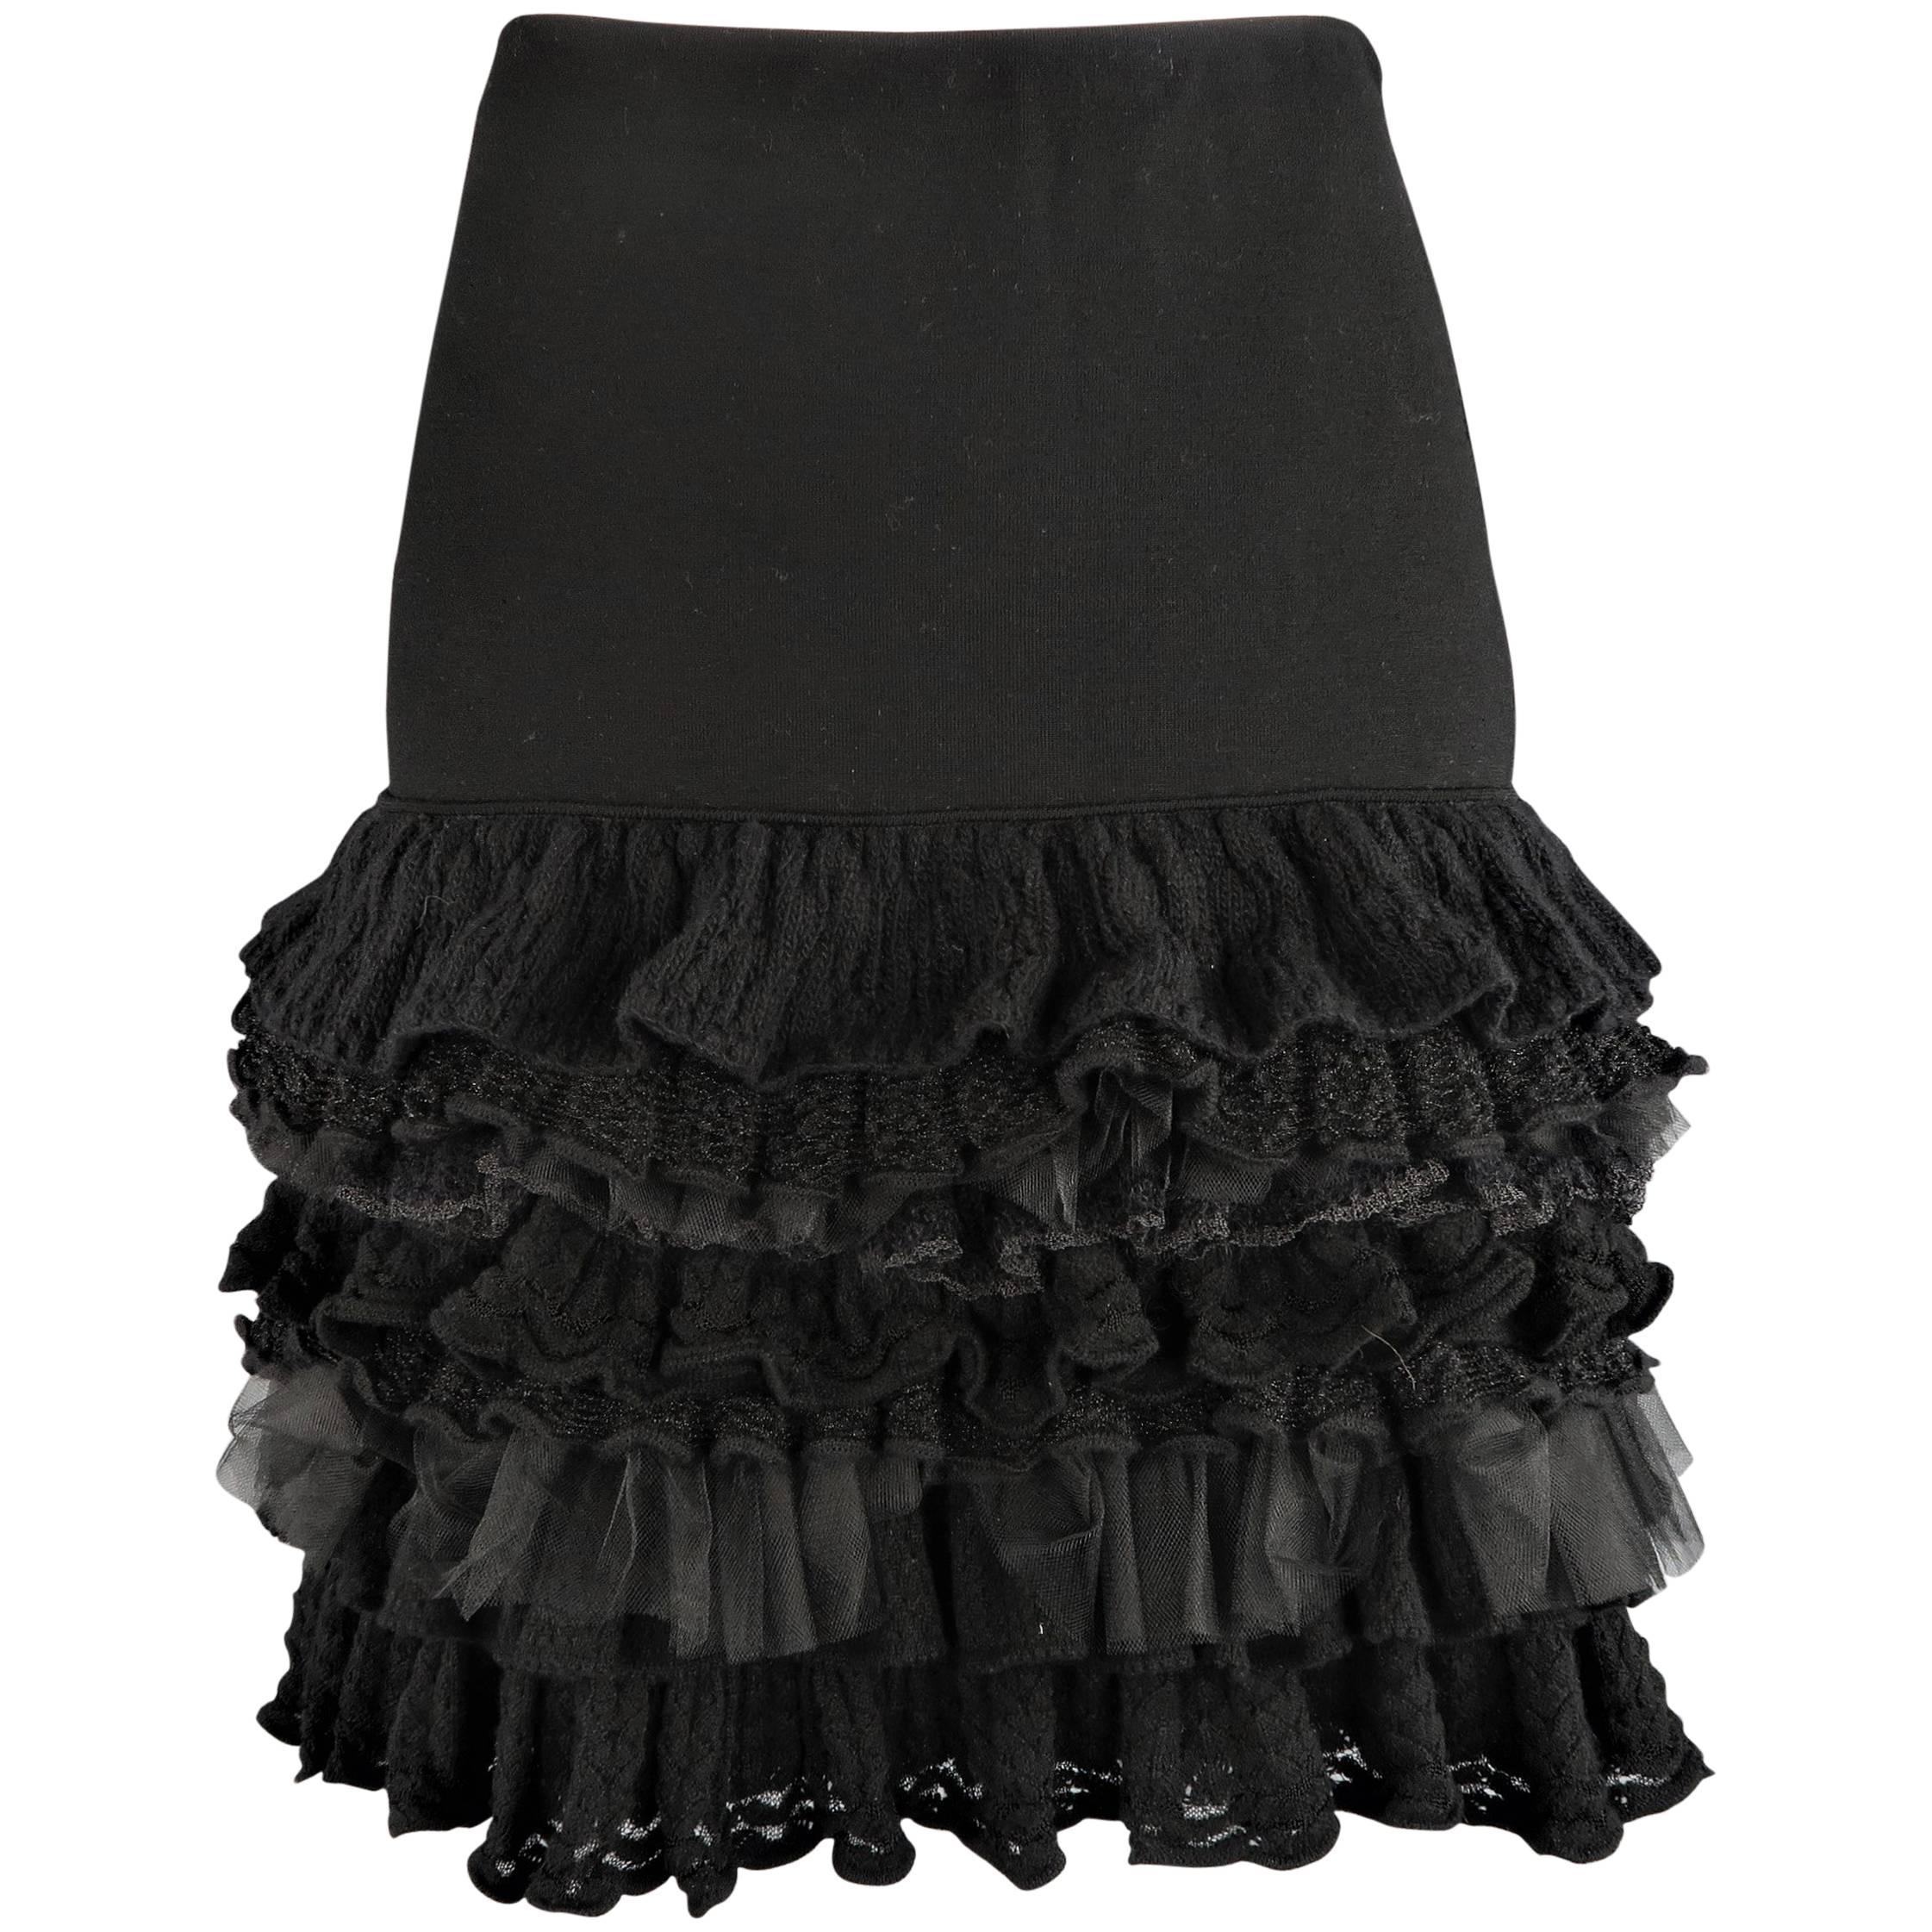 RALPH LAUREN COLLECTION Size M Black Drop Waist Wool & Tulle Ruffle Skirt